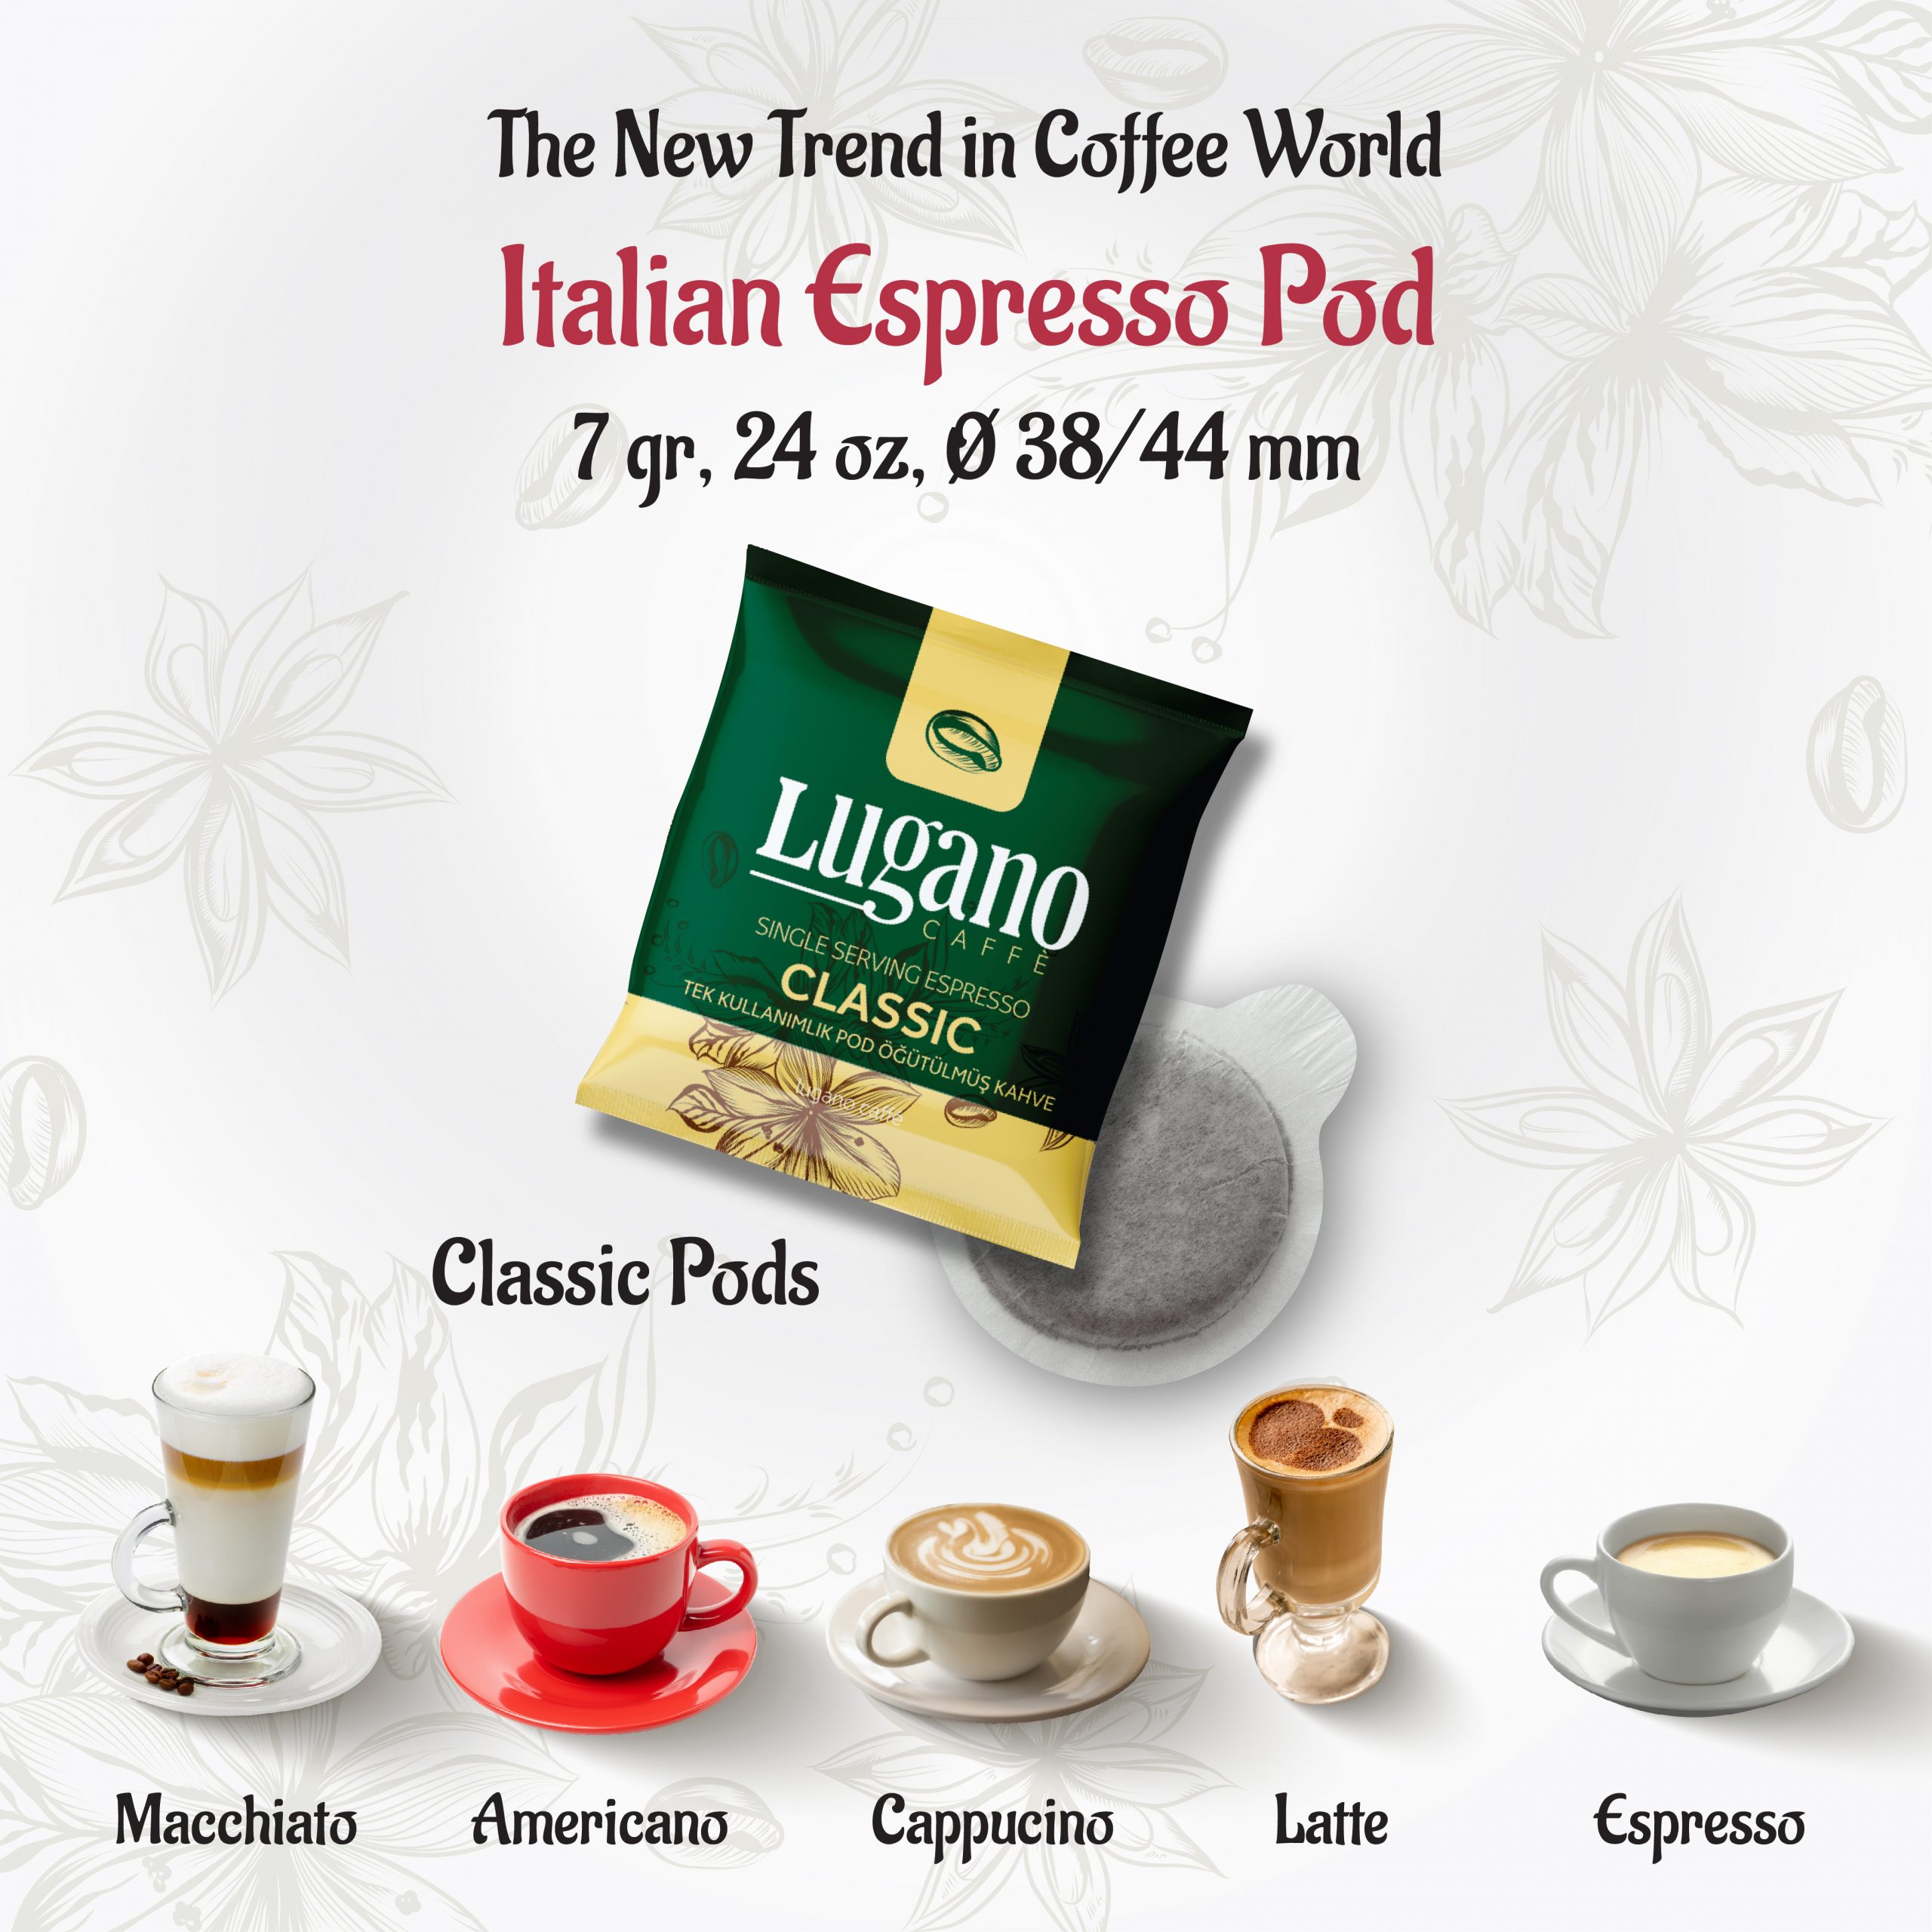 Italian Classic Espresso Pod Dimensions